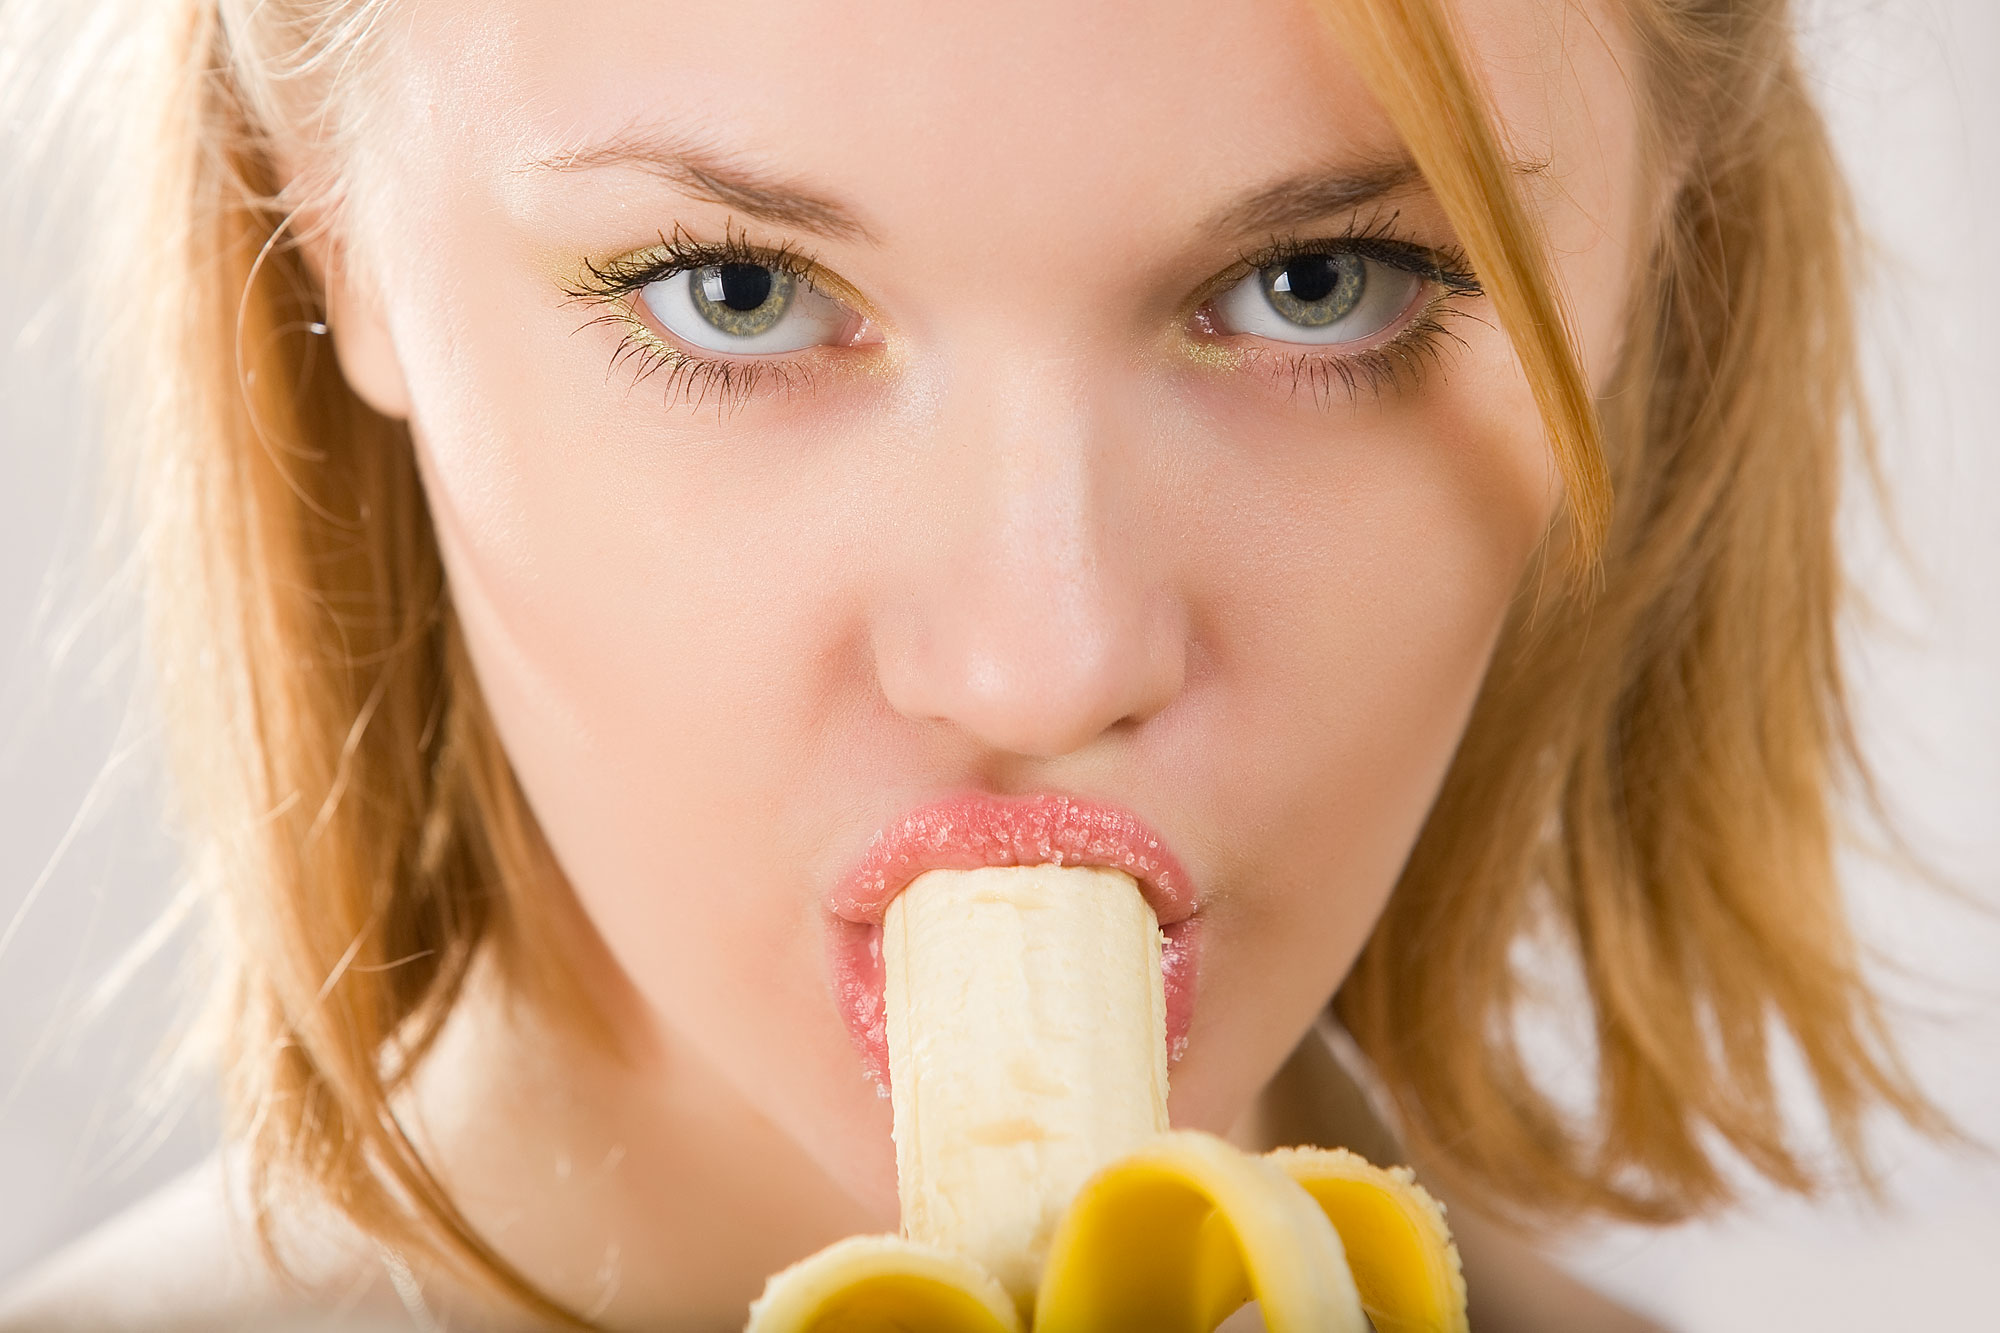 Голая девушка сексуально ест бананы и показывает насколько она возбуждена